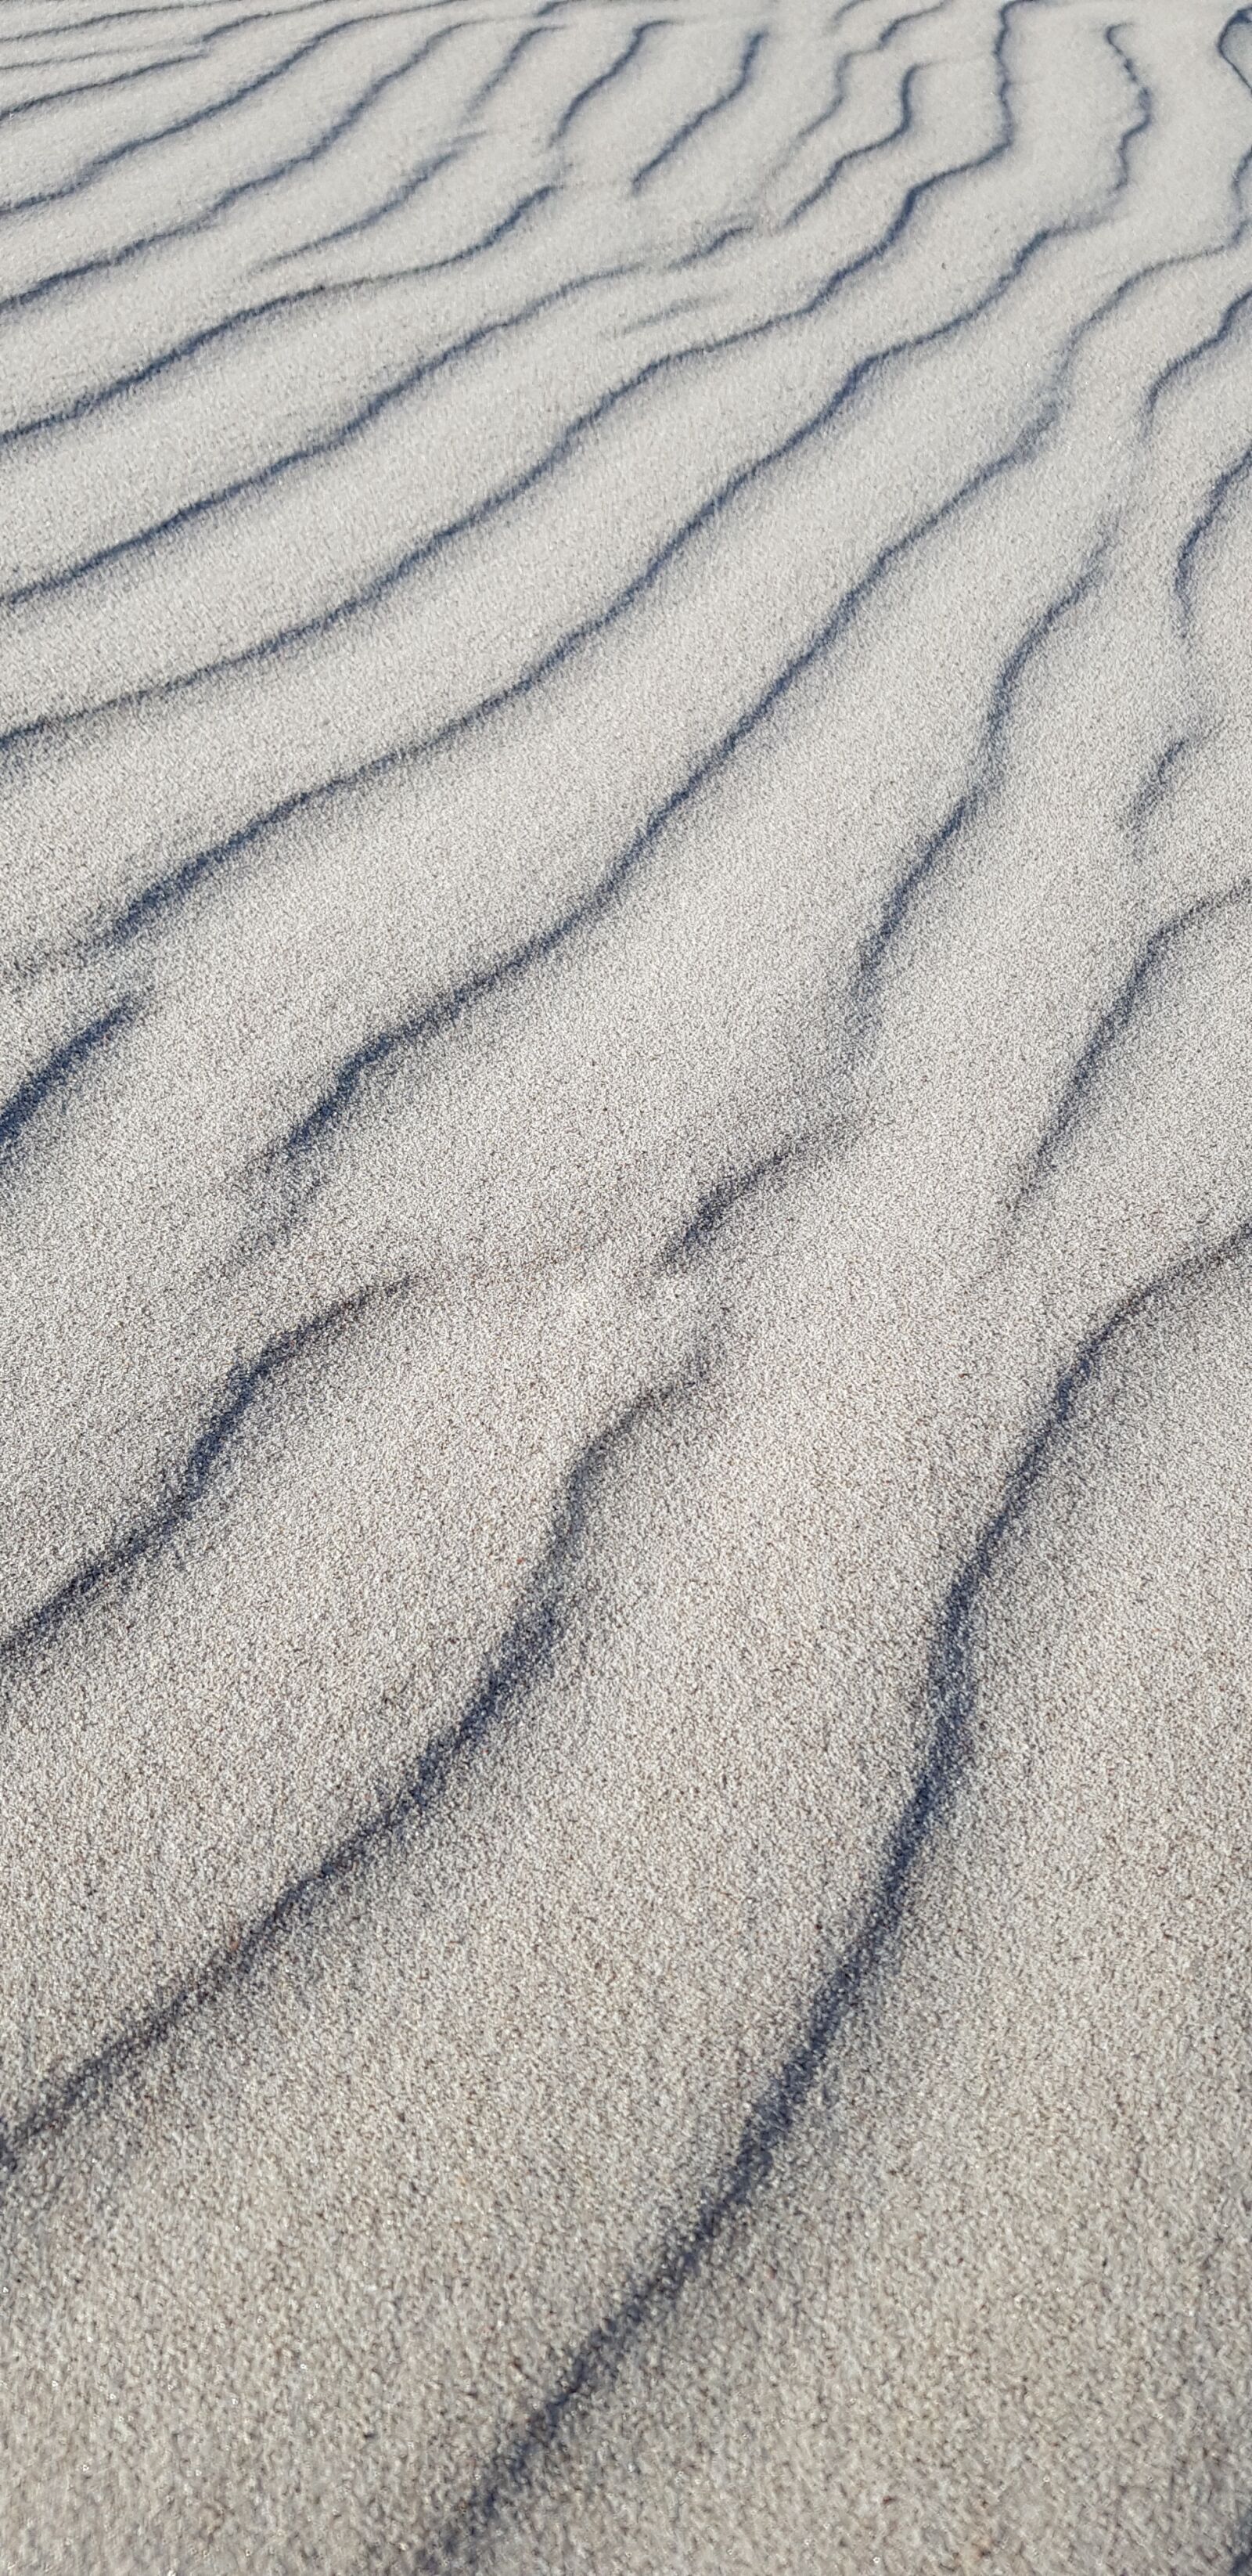 Samsung Galaxy S8 sample photo. Sand, curves, beach photography